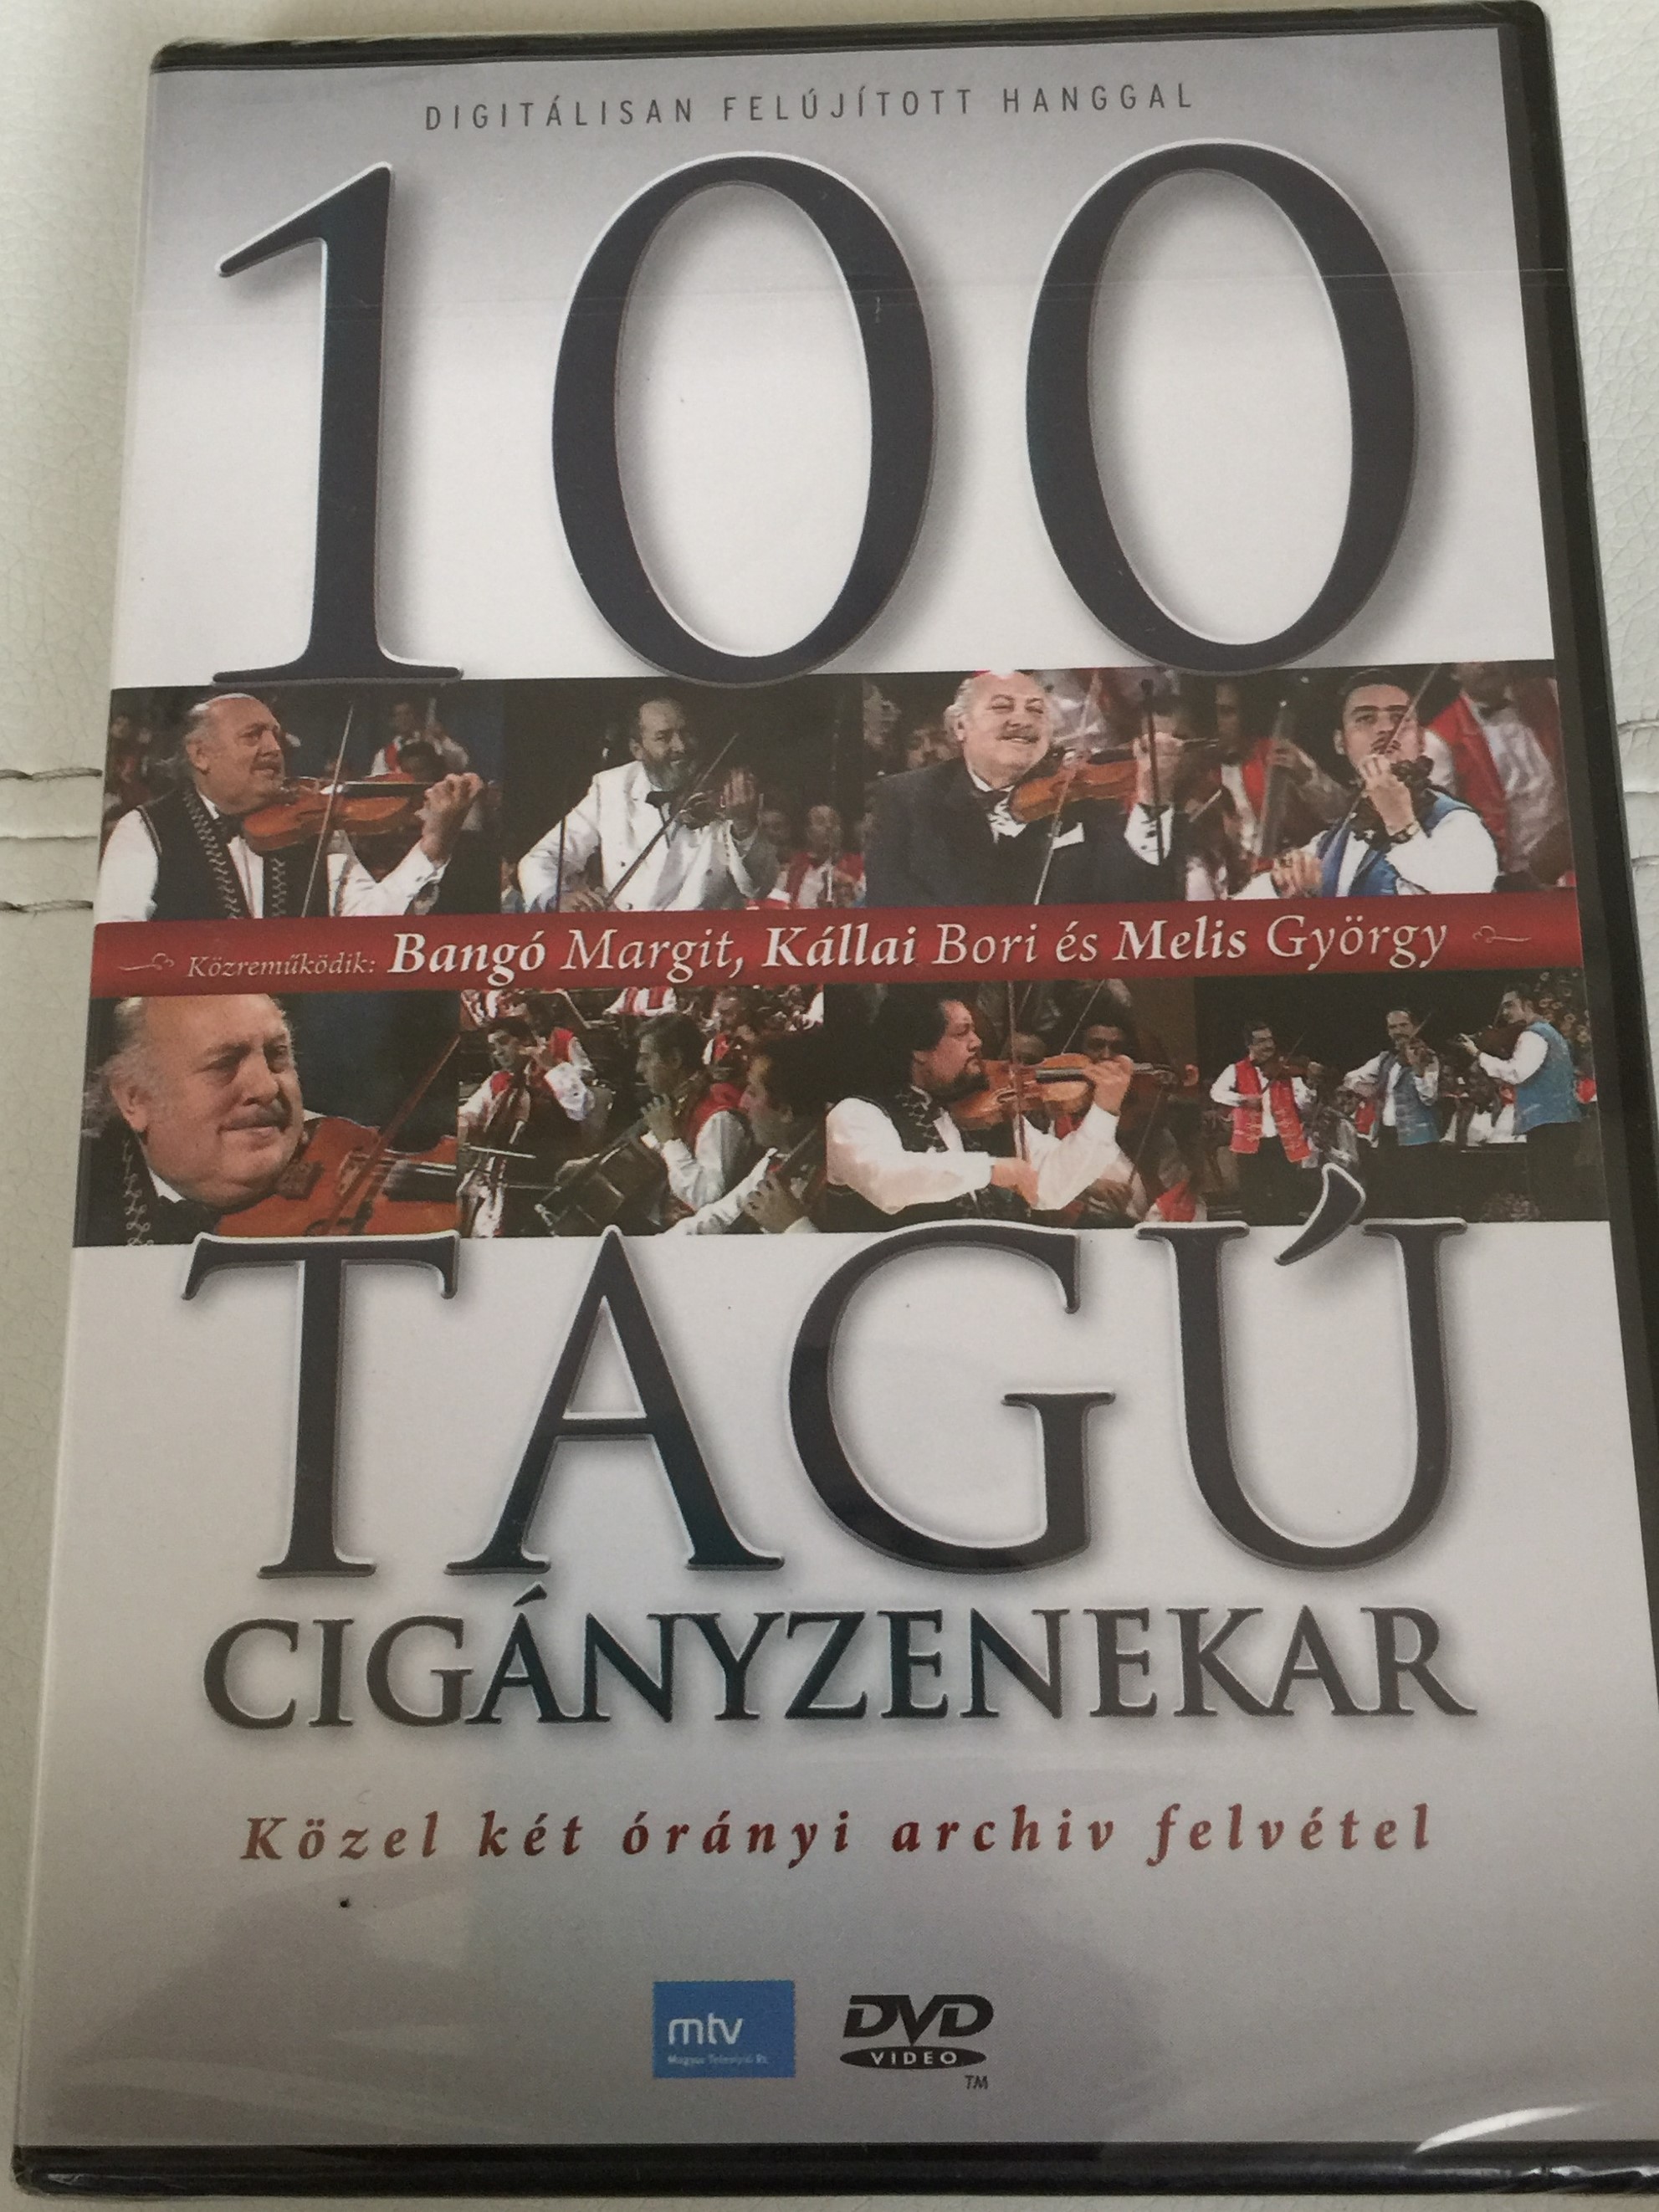 100-tag-cig-nyzenekar-dvd-budapest-gypsy-orchestra-1.jpg